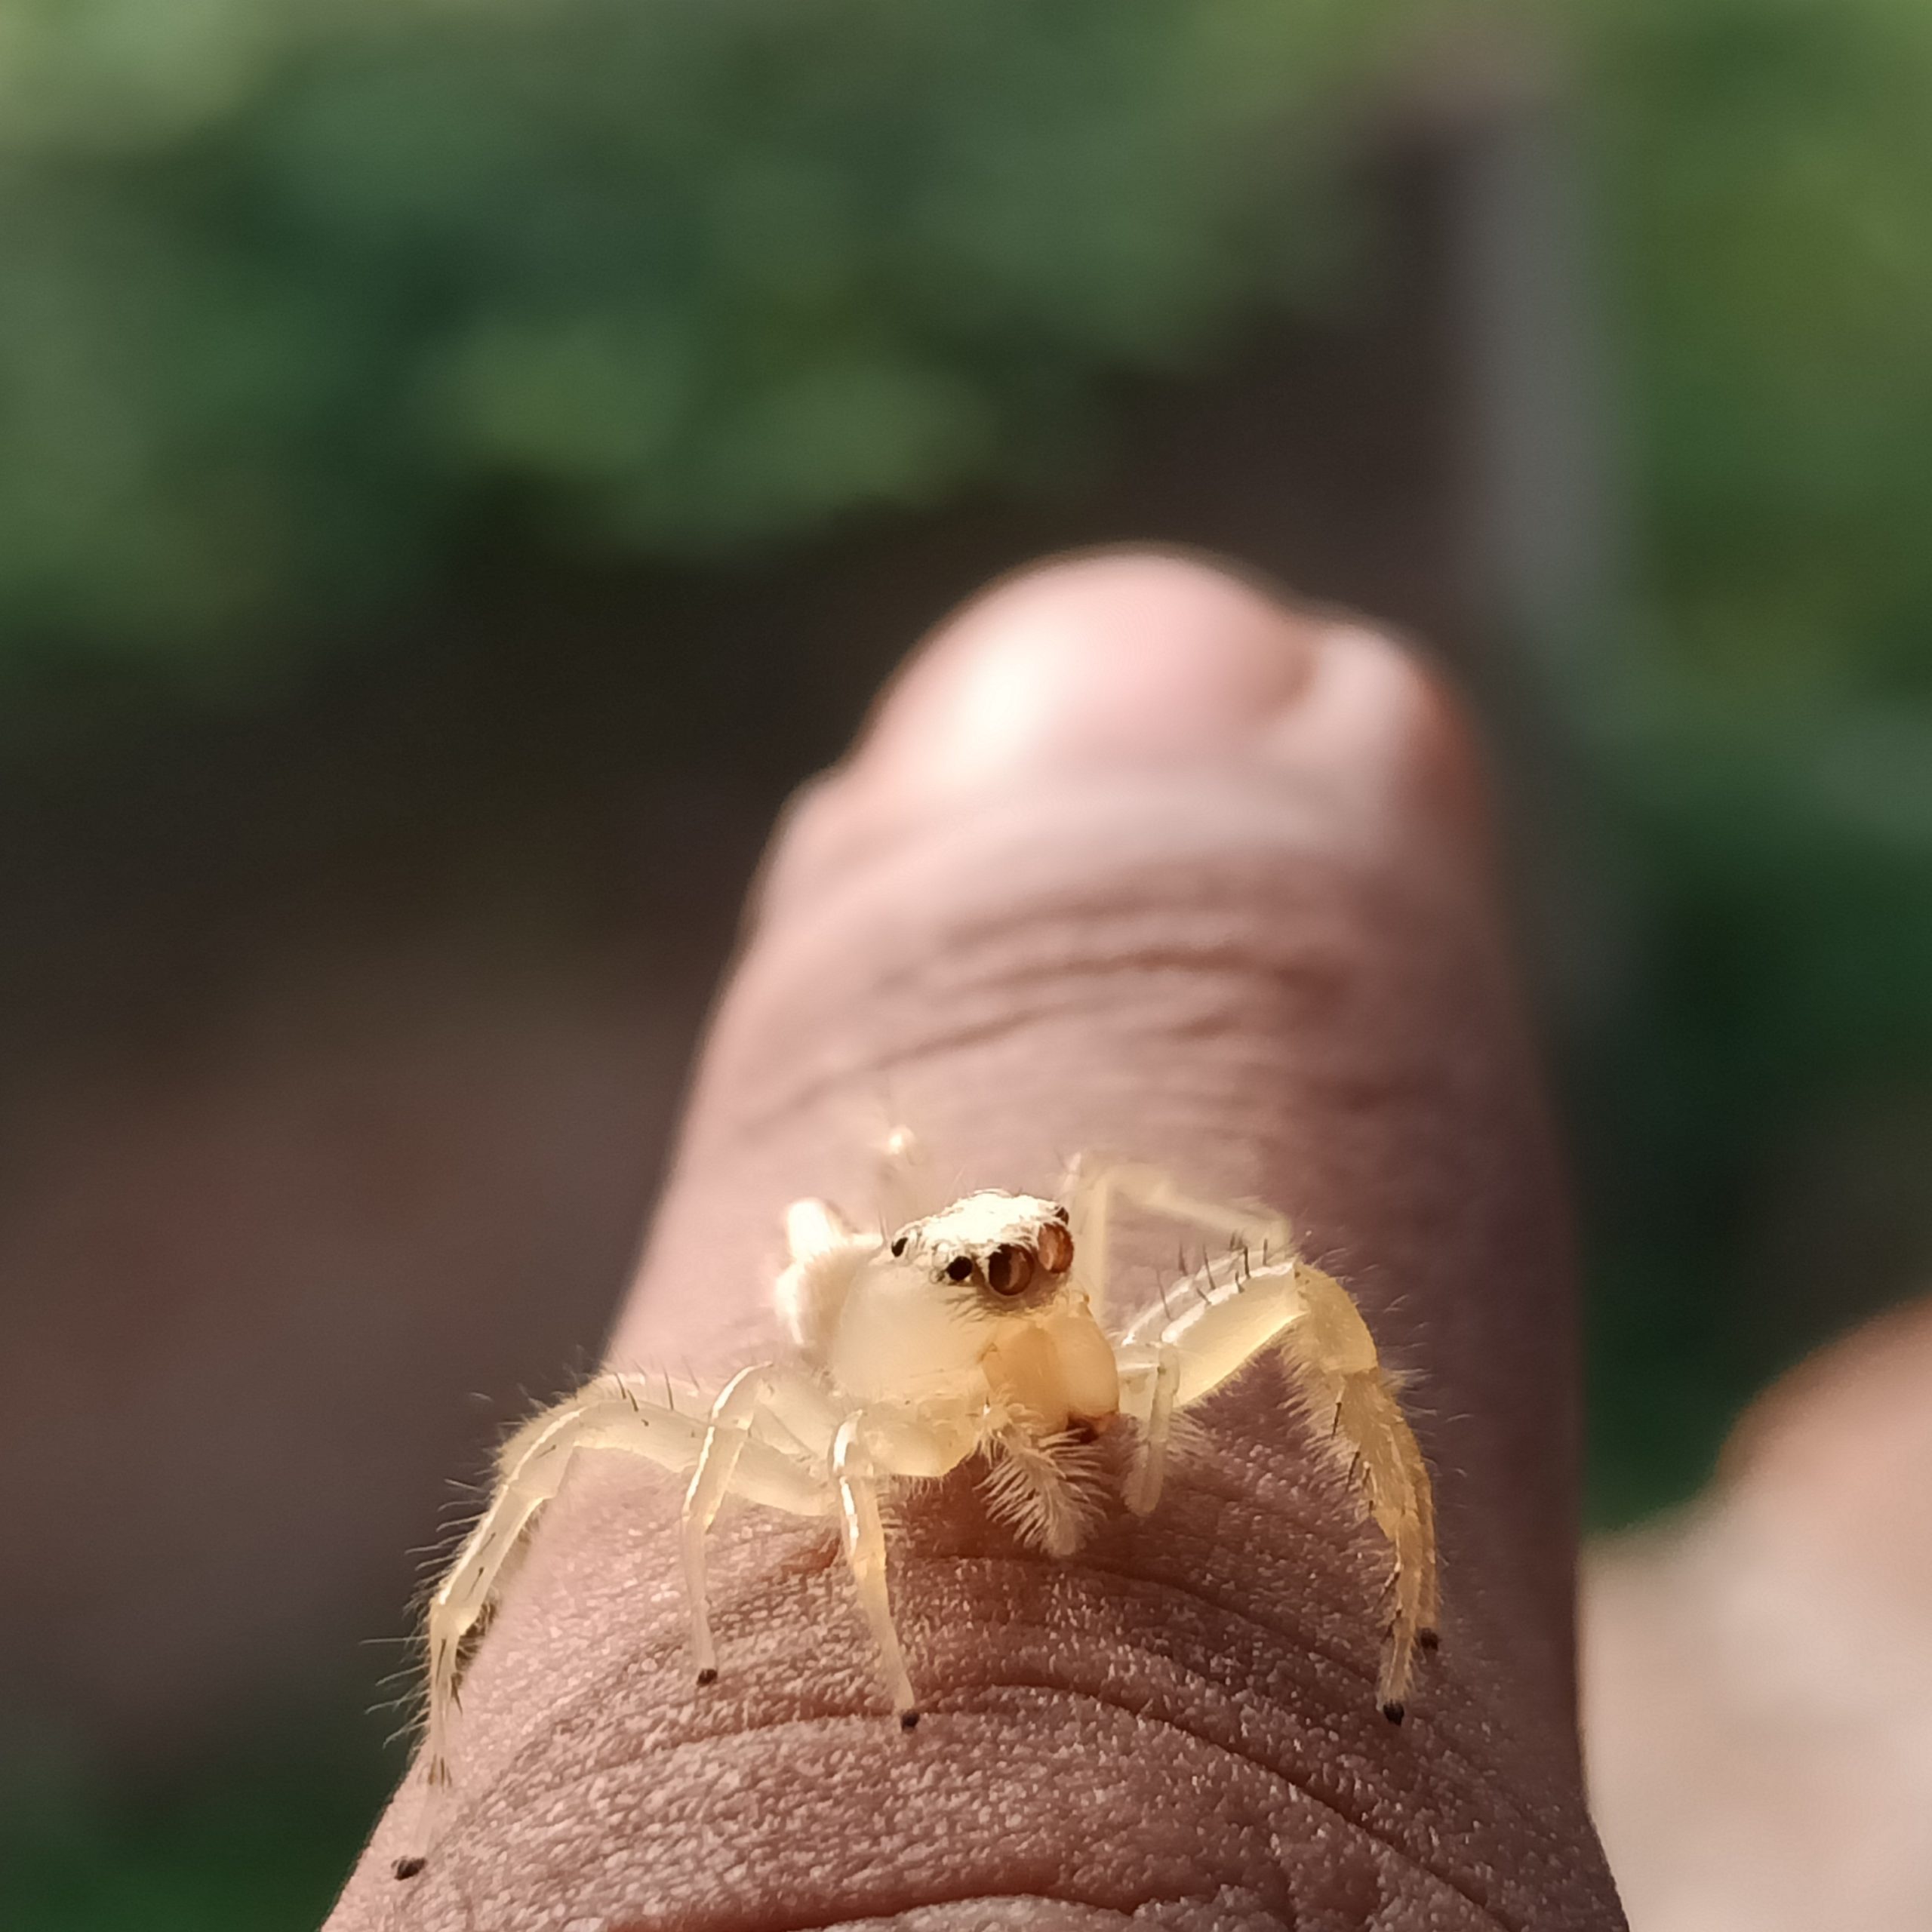 A spider on finger